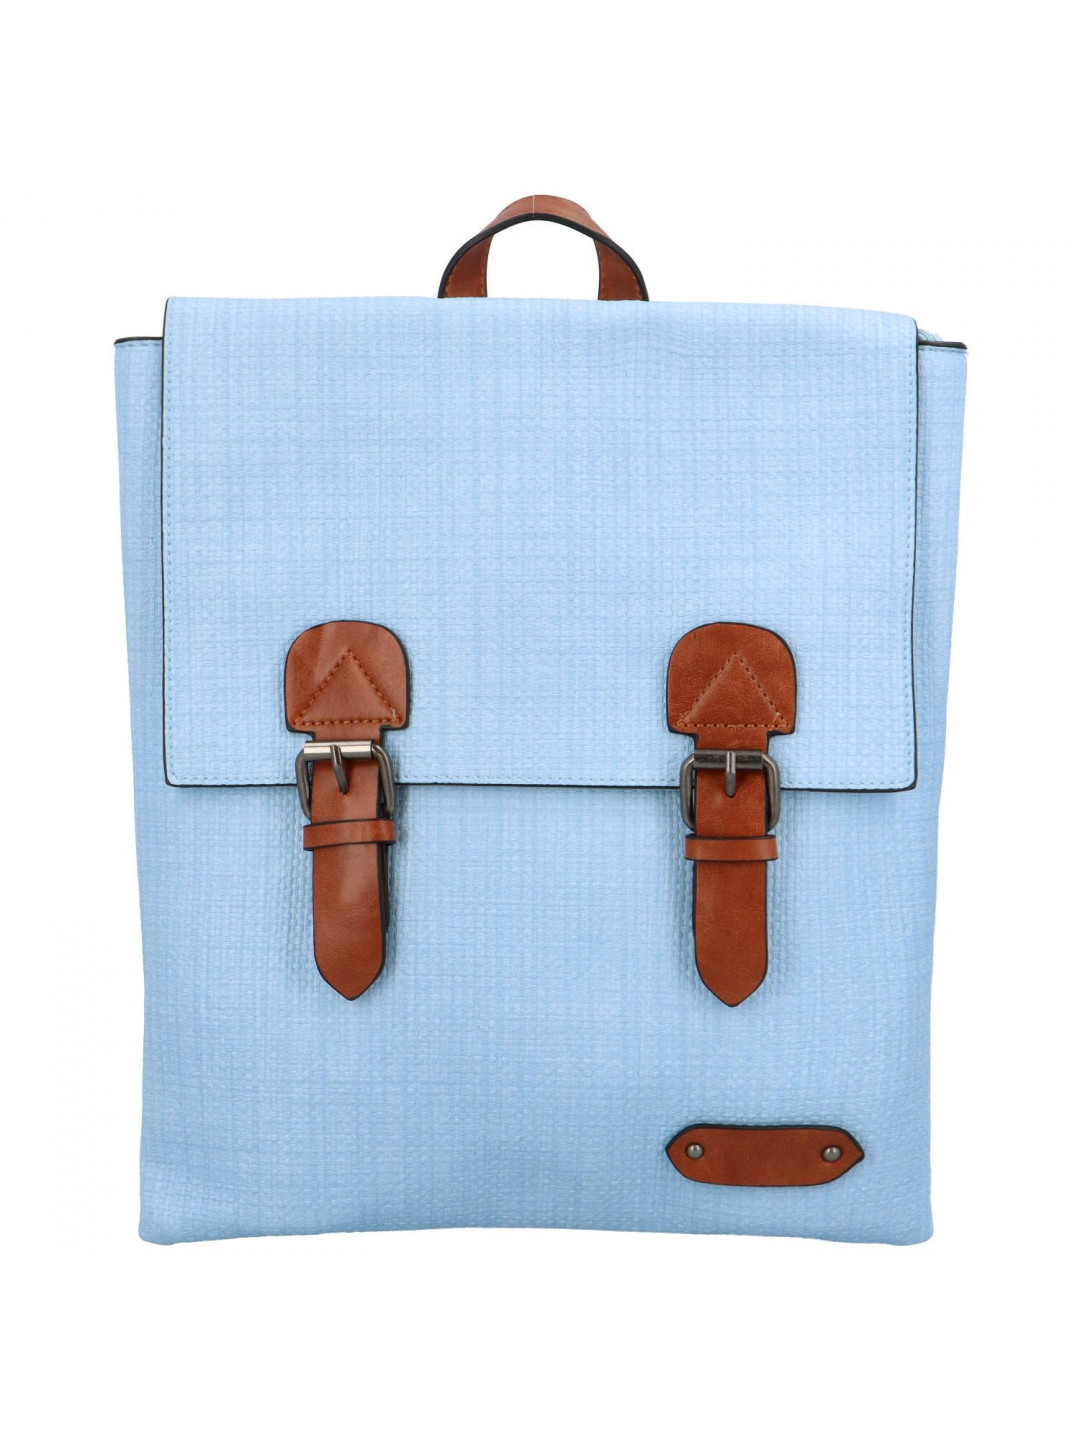 Trendový dámský koženkový batoh Nava světle modrý